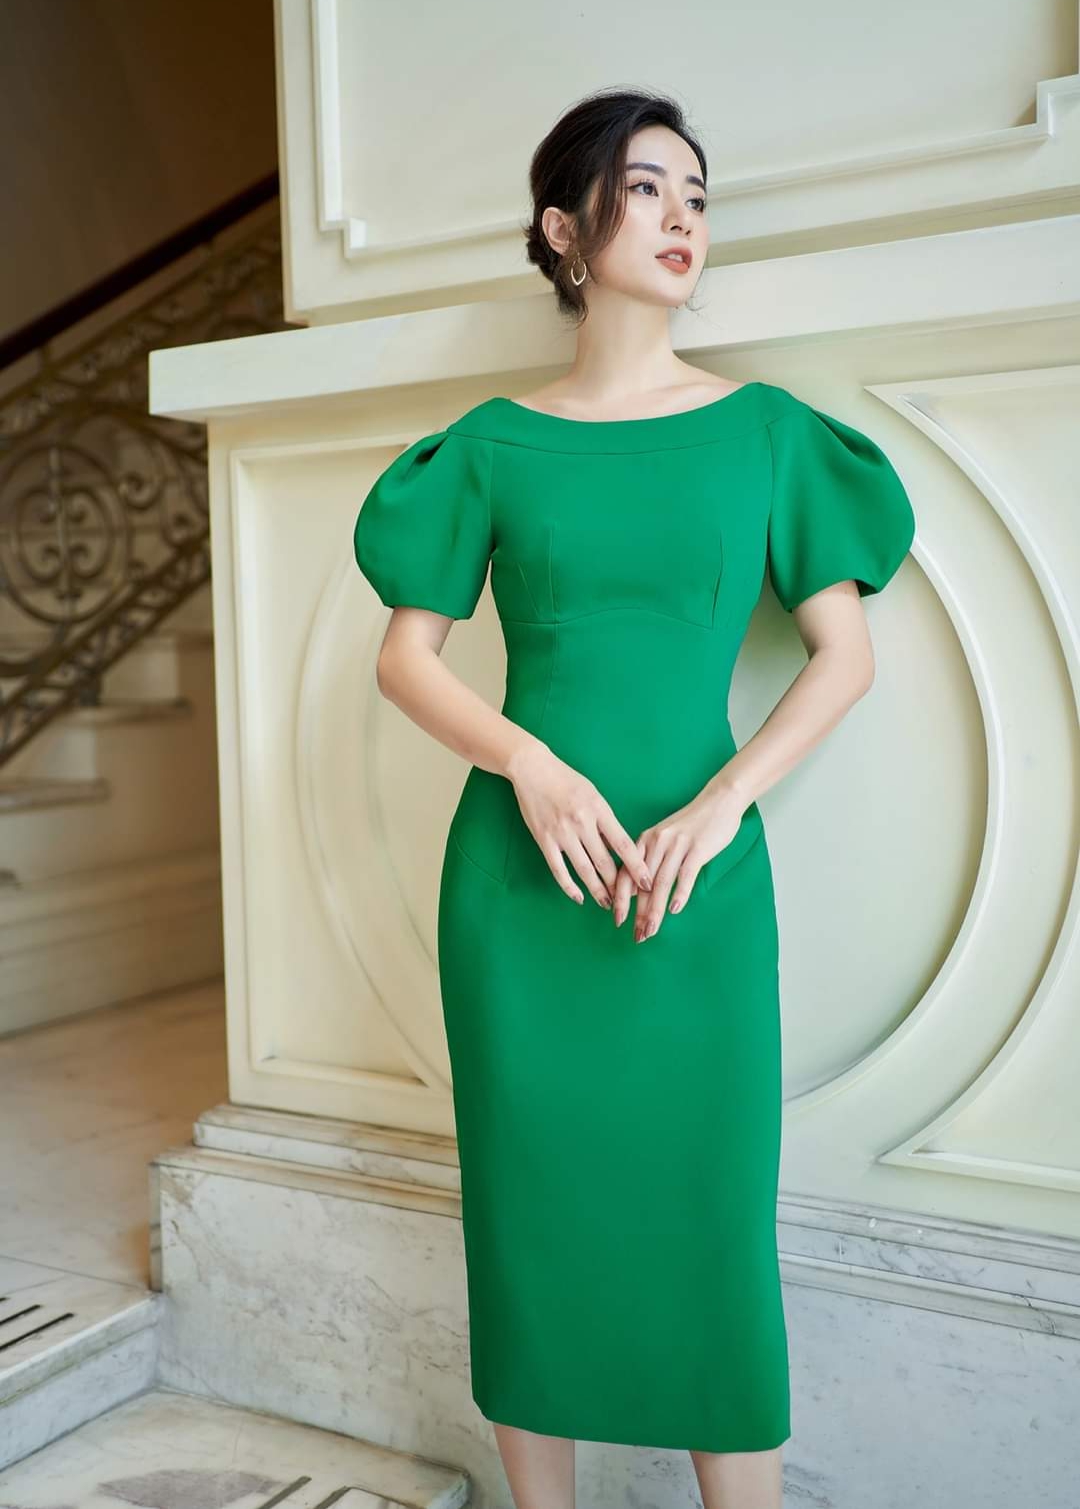 Đầm dạ hội cao cấp màu xanh lá giá rẻ bán ở tại tphcm